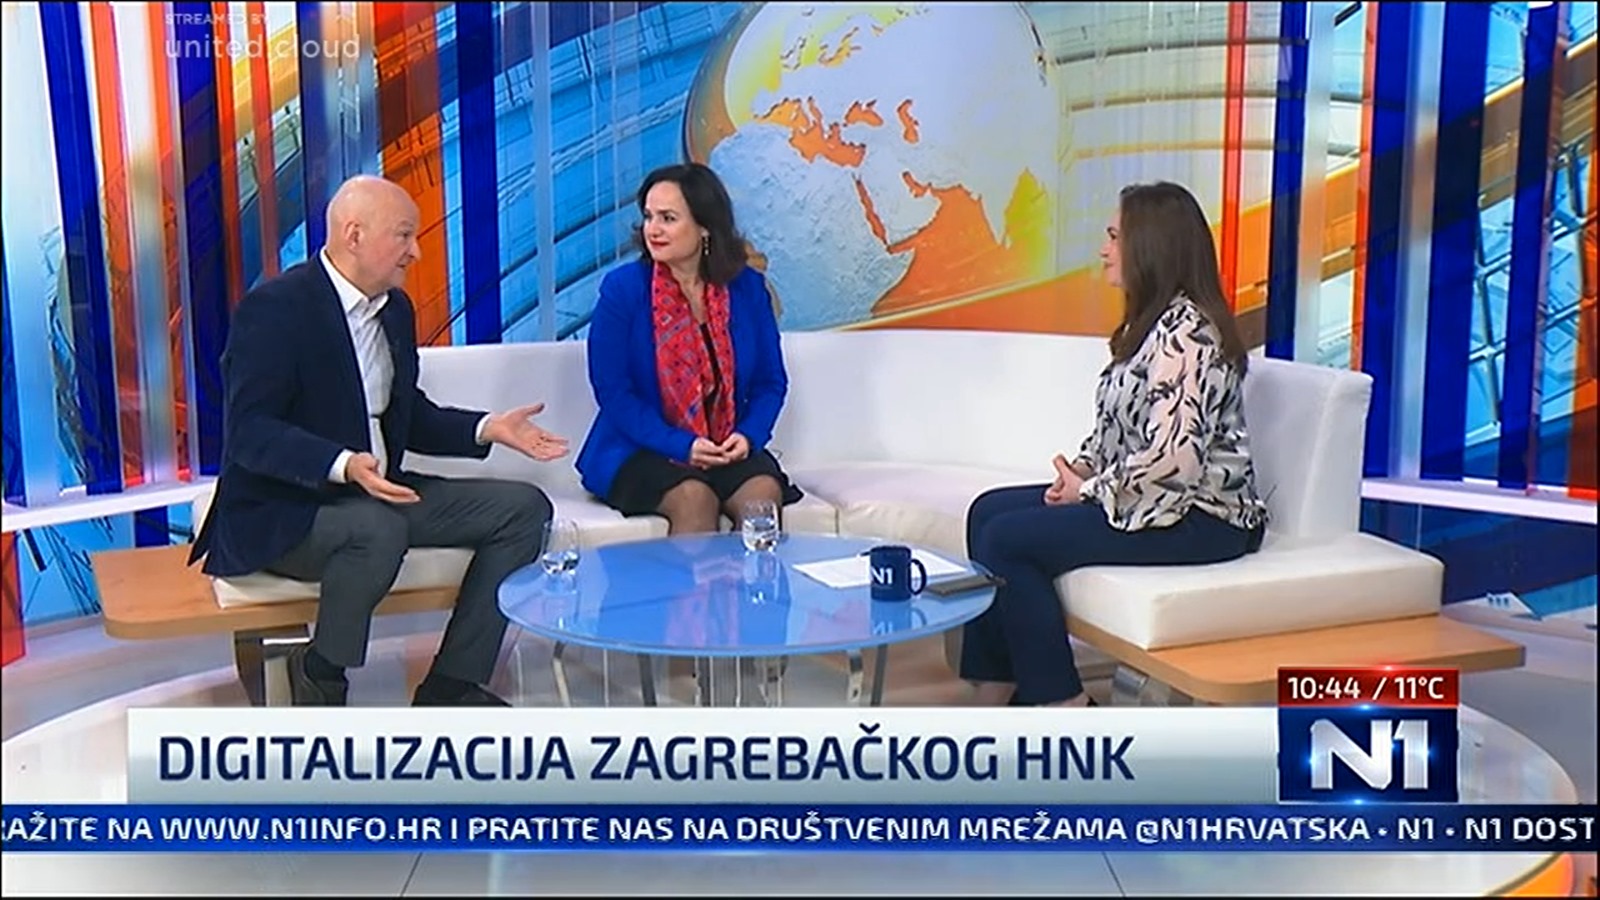 Stjepan Oreskovic, Iva Hraste Soco i Sandra Krizanac